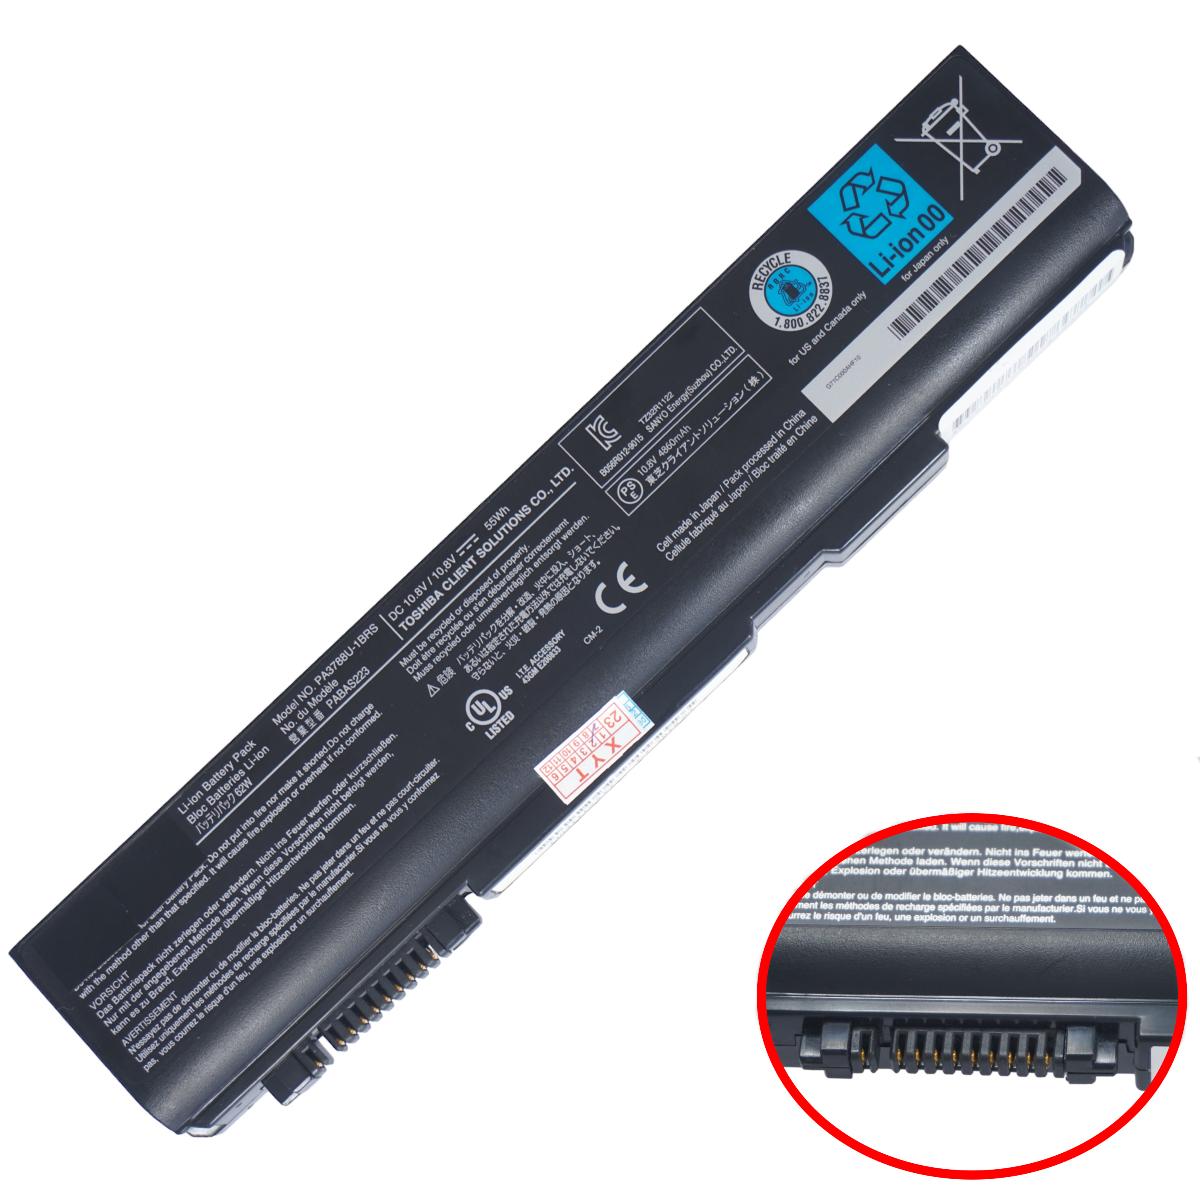 Μπαταρία Laptop - Battery για Toshiba Satellite B450 L40 S500 S750 Tecra A11 M11 S11 PA3787 PA3788U-1BRS PABAS223 PABAS221 10.8V 55Wh 4860mAh ( Κωδ.1-BAT0550 )